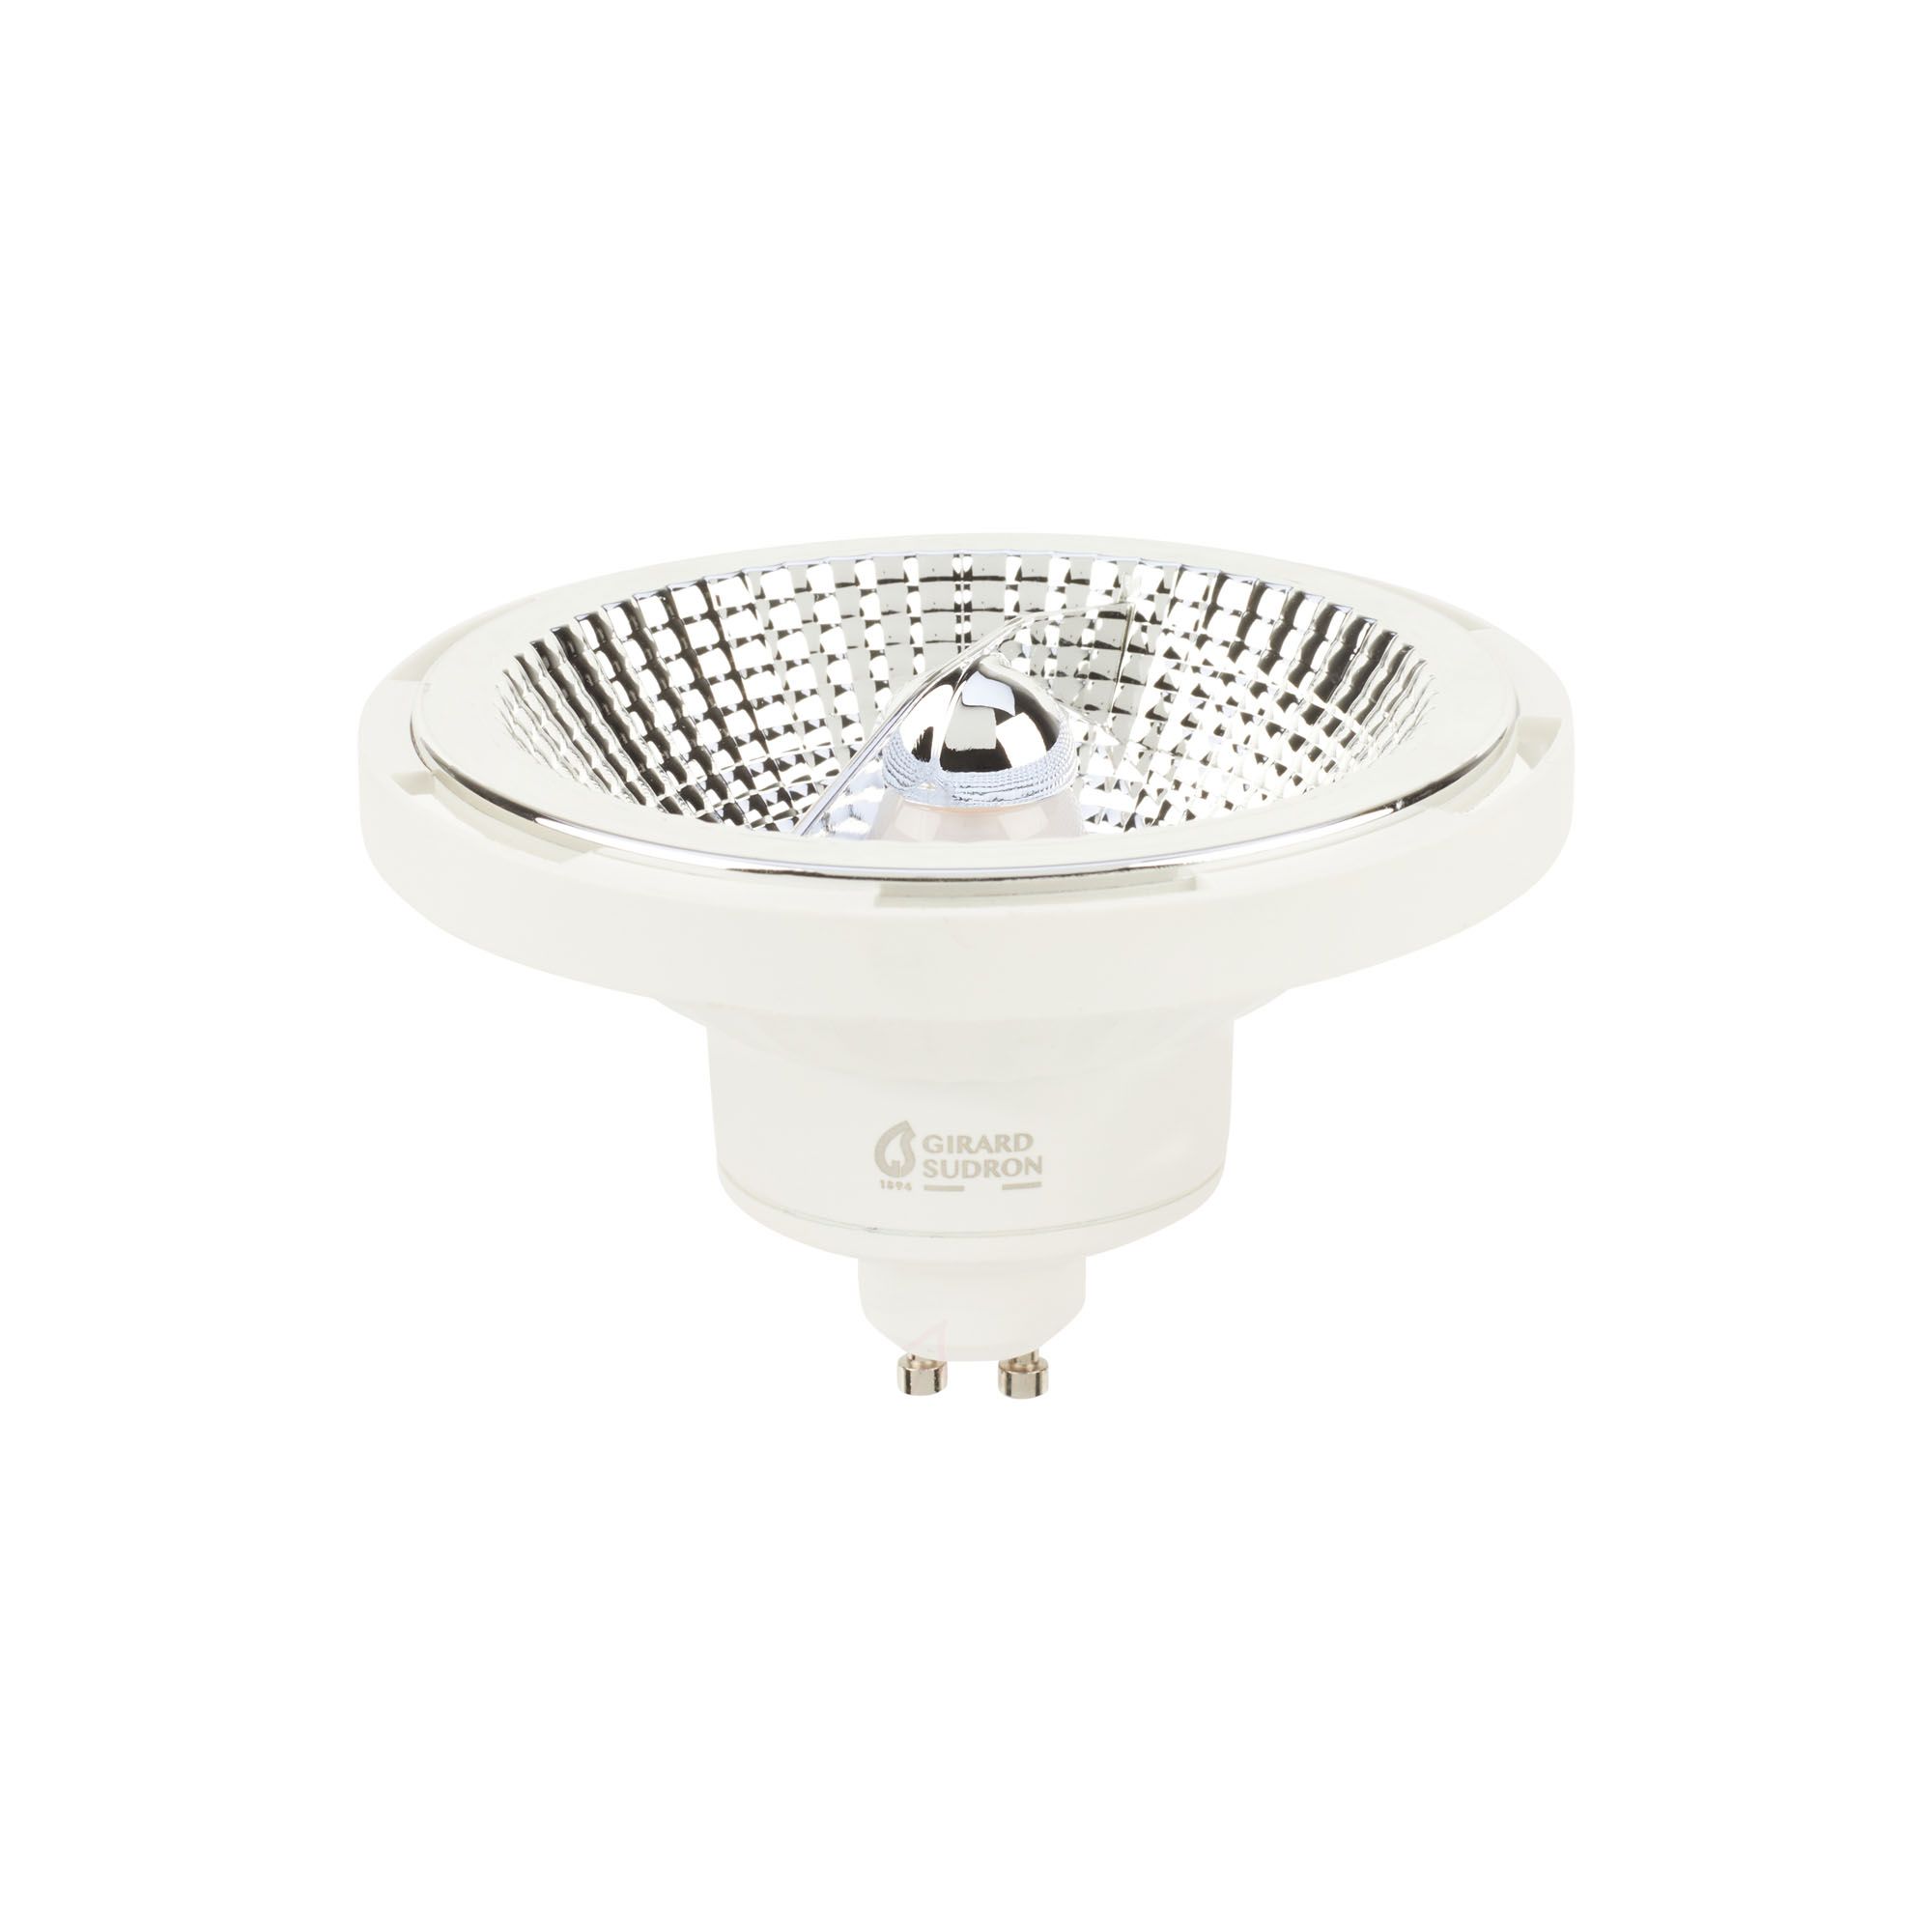 Noxion Lucent Spot LED GU10 AR111 12W 600lm 40D - 927 Blanc Très Chaud, Meilleur rendu des couleurs - Dimmable - Équivalent 50W